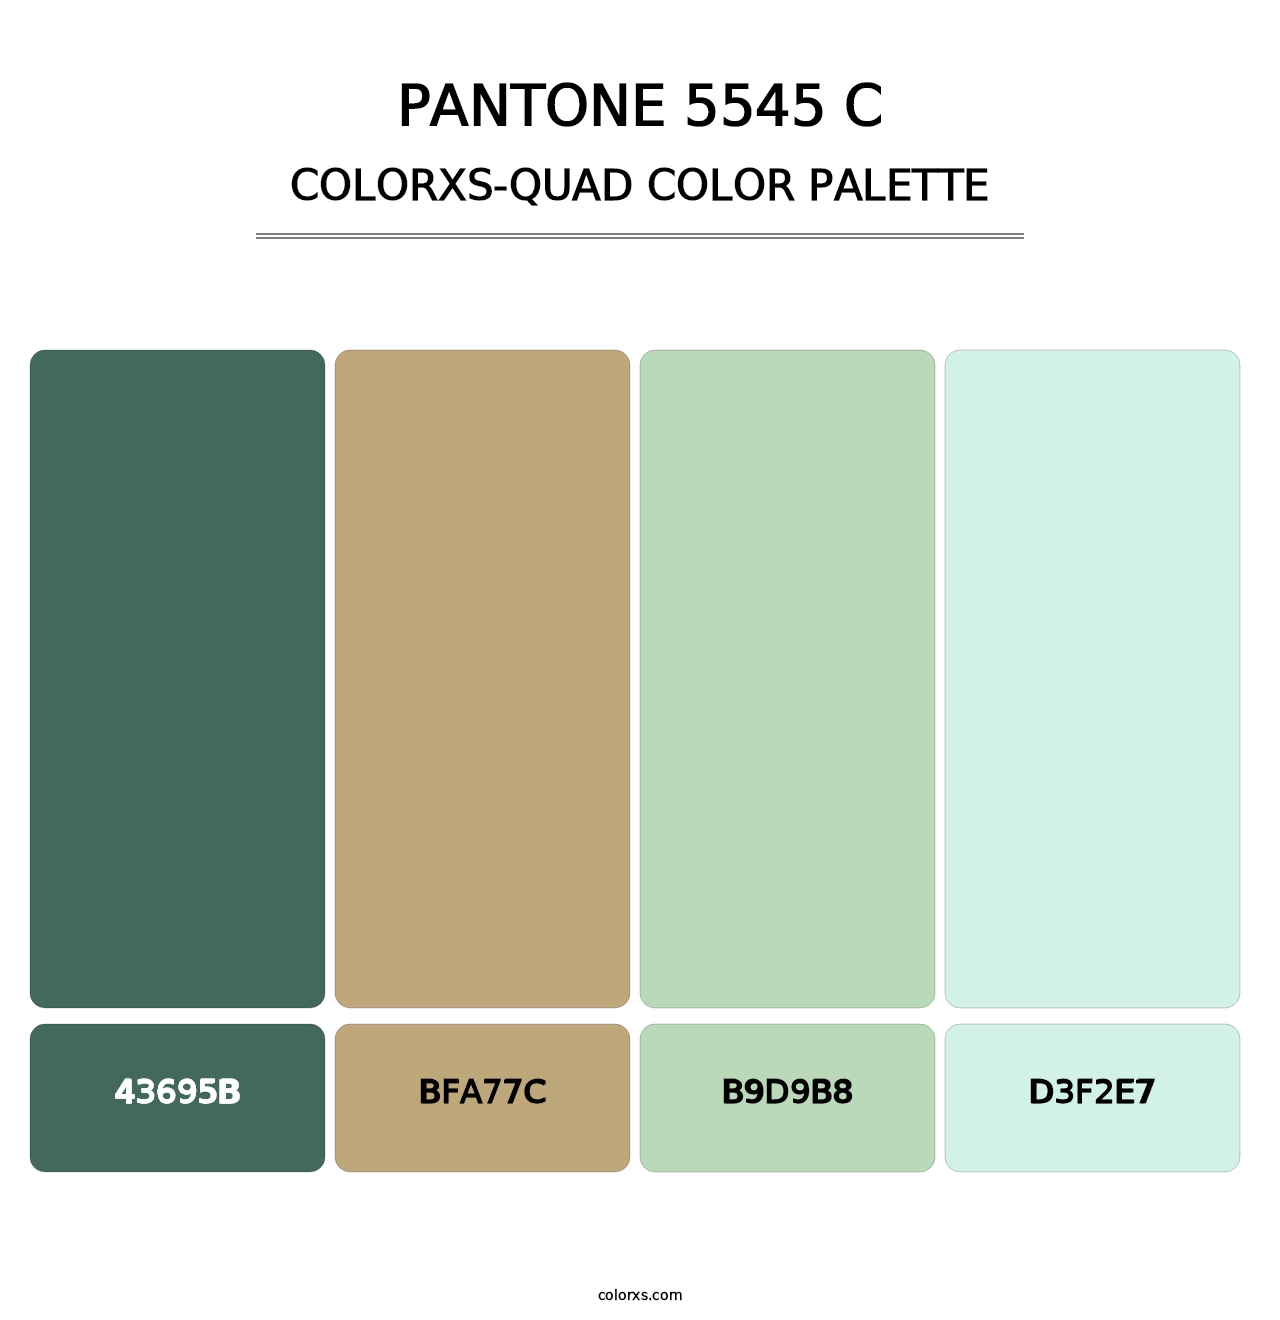 PANTONE 5545 C - Colorxs Quad Palette